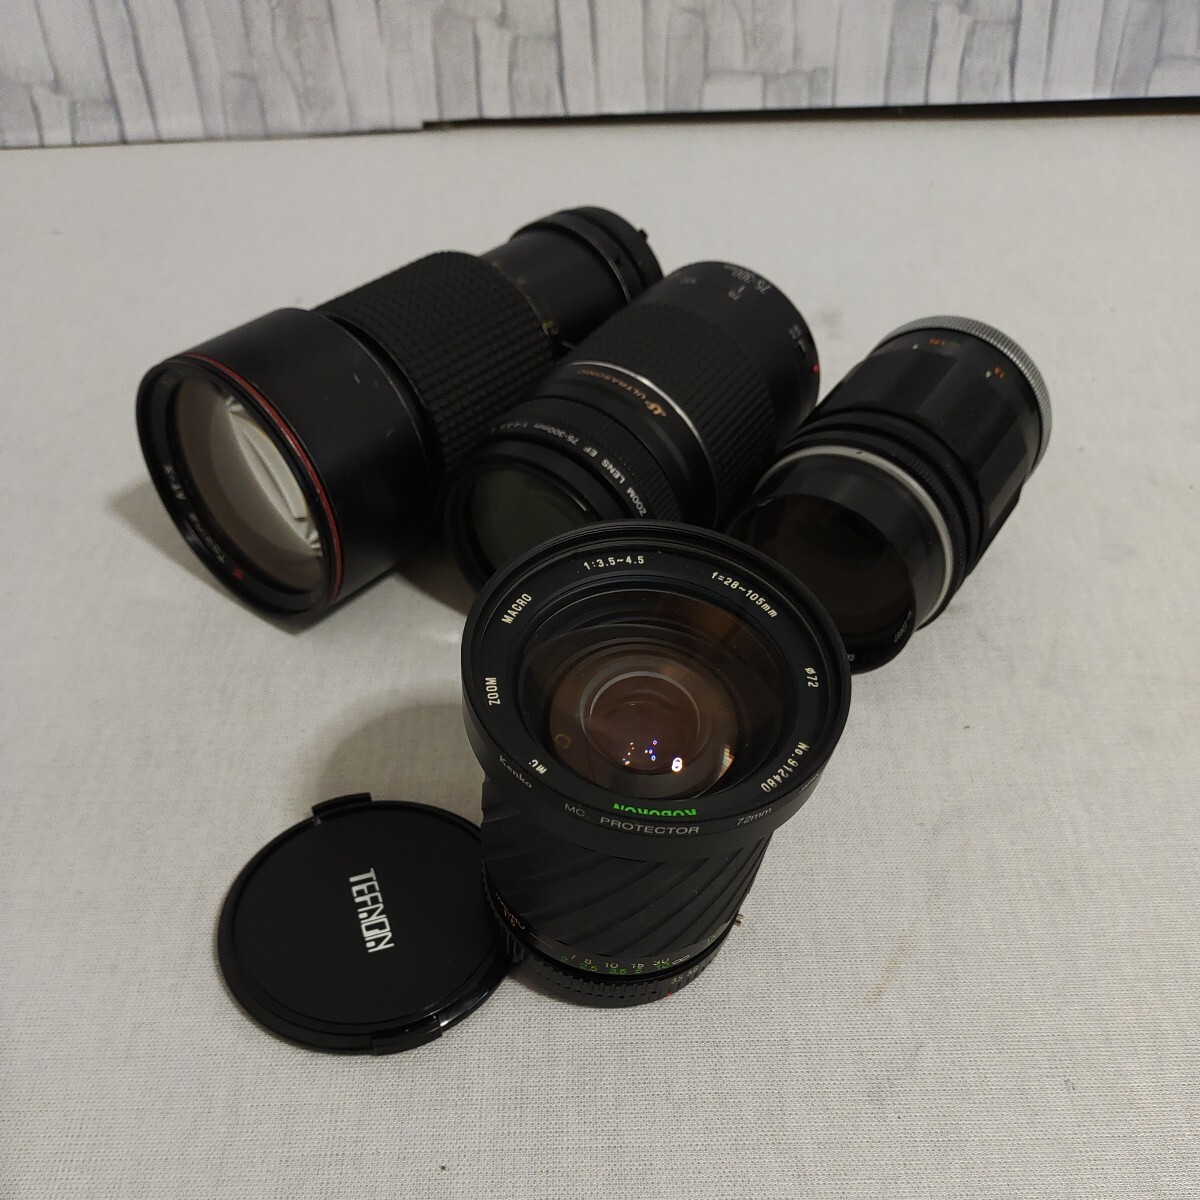 F042 Canon135mm F2.5 MACRO 28-105mm F3.5-4.5 Tokina 80-200mm F2.8 canon 75-300mm F4-5.6 カメラレンズ レンズ_画像1